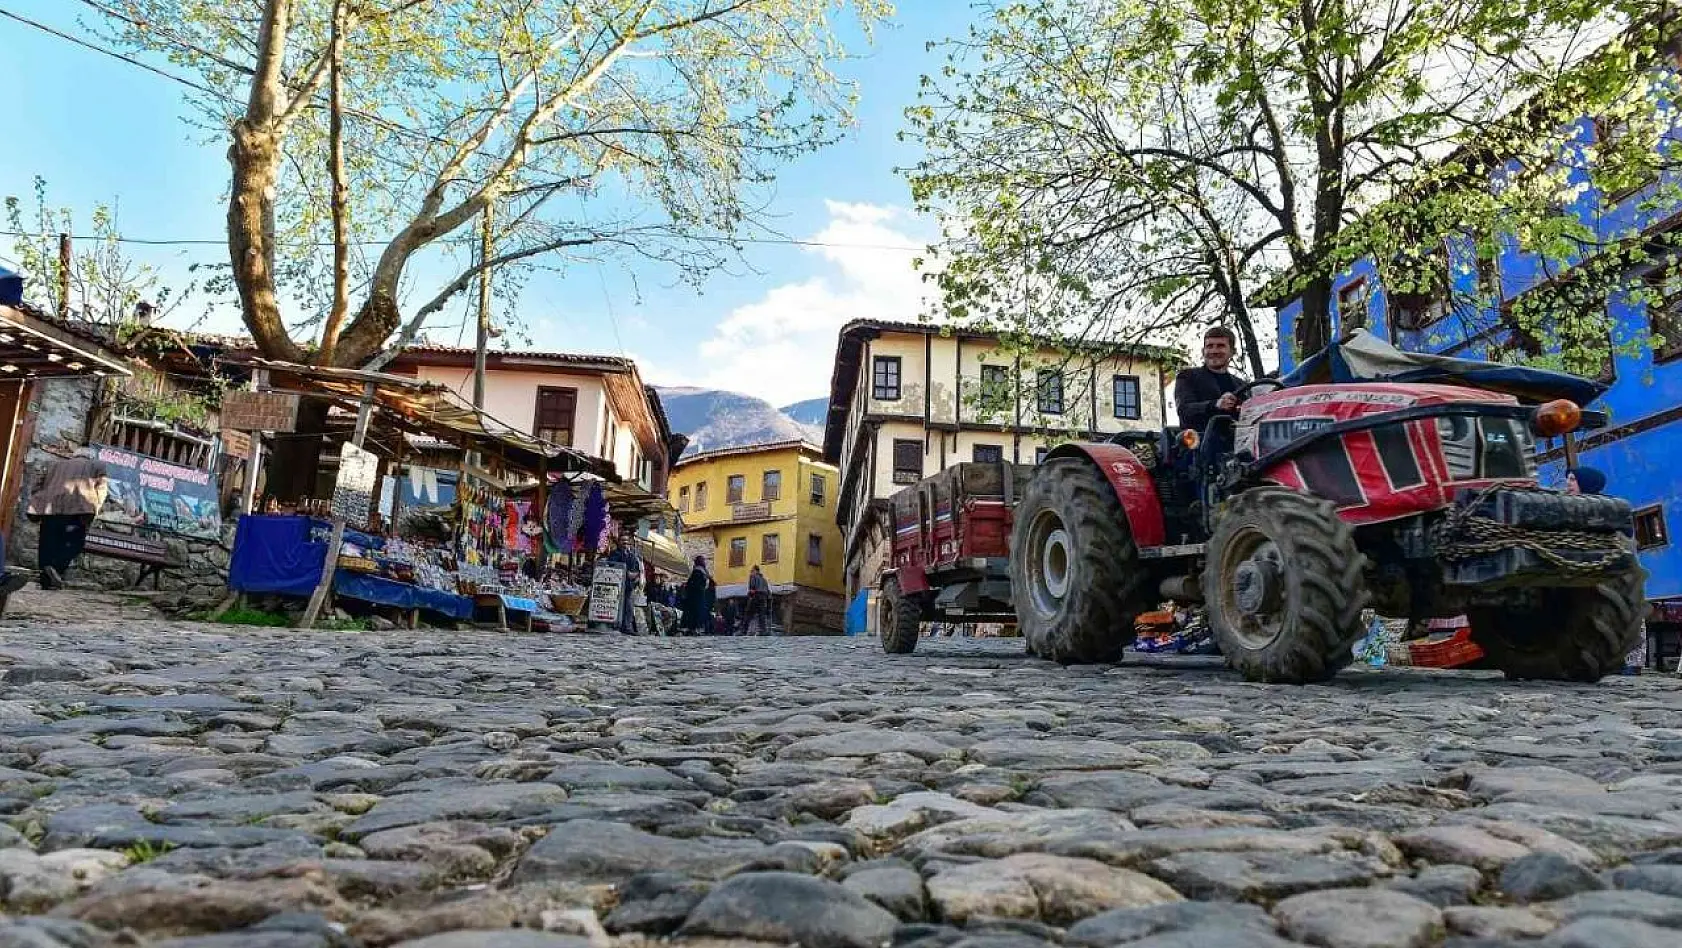 Cumalıkızık 'Birleşmiş Milletler En İyi Turizm Köyü Geliştirme Programı'na seçildi